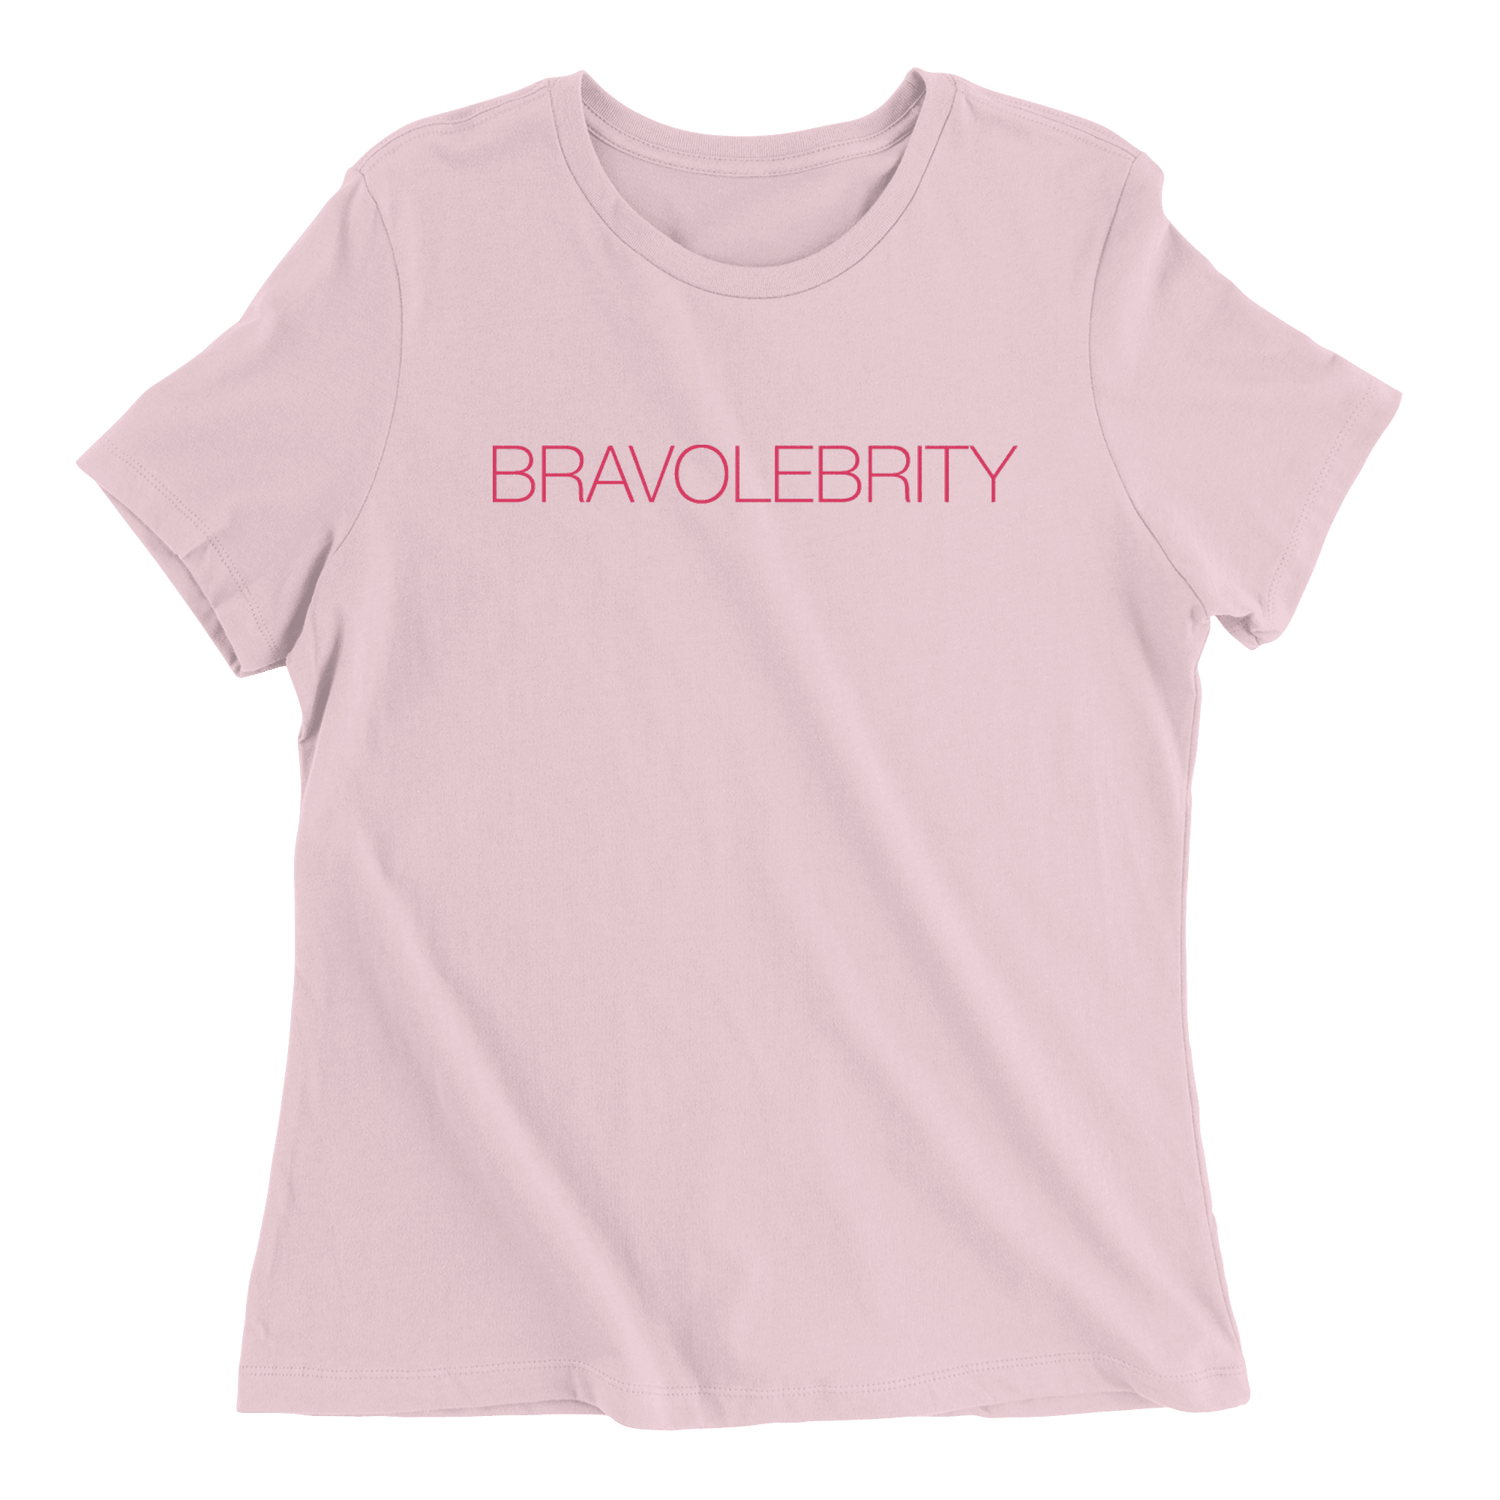 Bravolebrity - The T-Shirt Deli, Co.